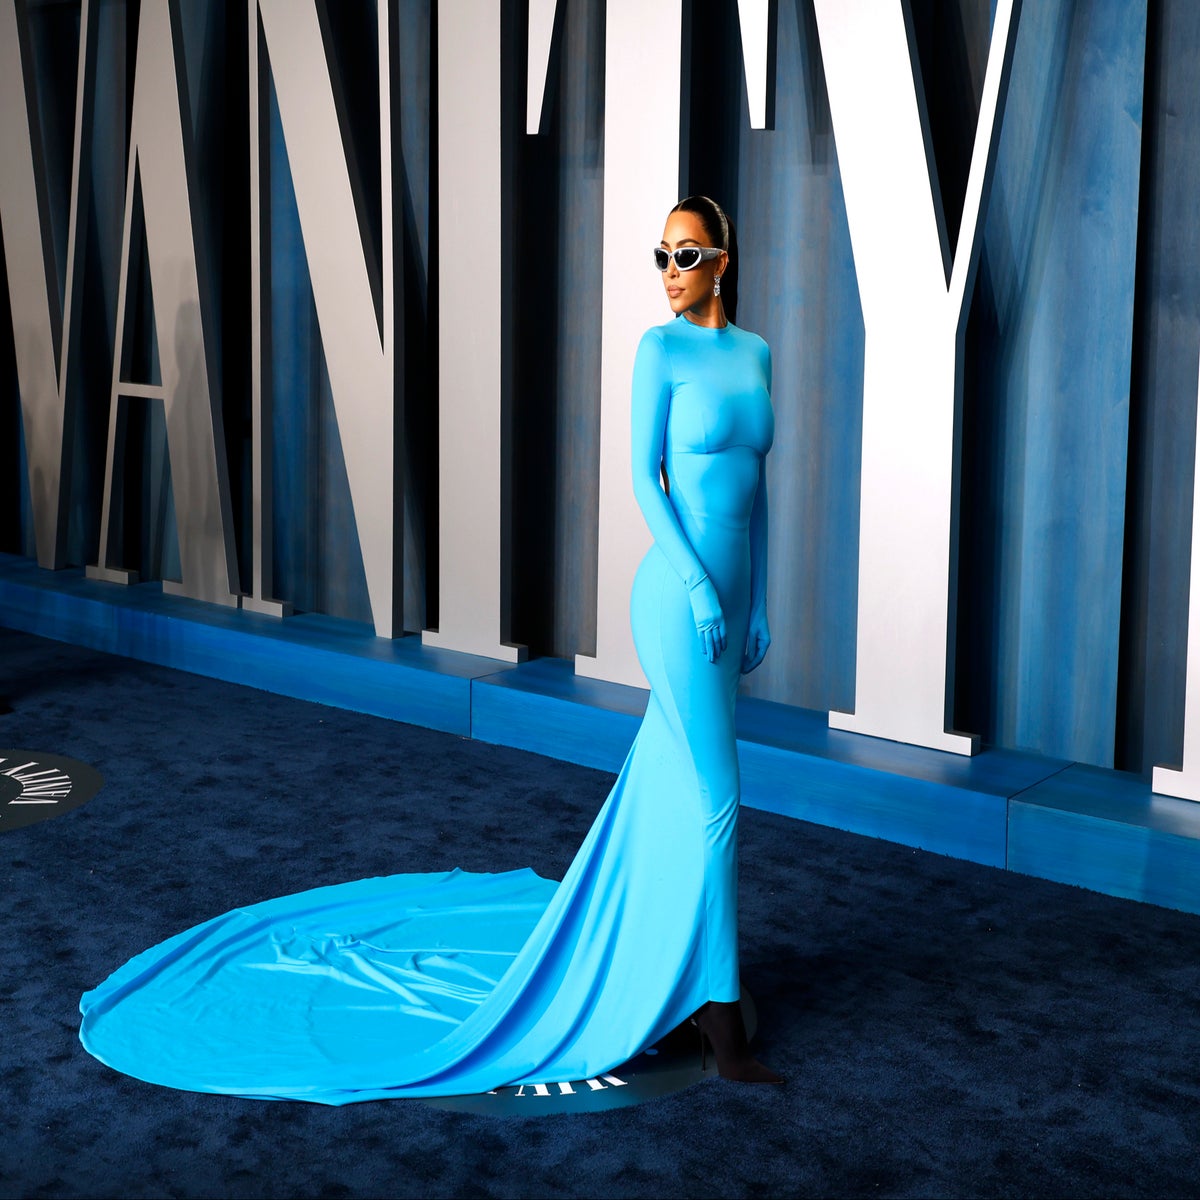 Kim Kardashian struggled to walk in Balenciaga tape outfit she had